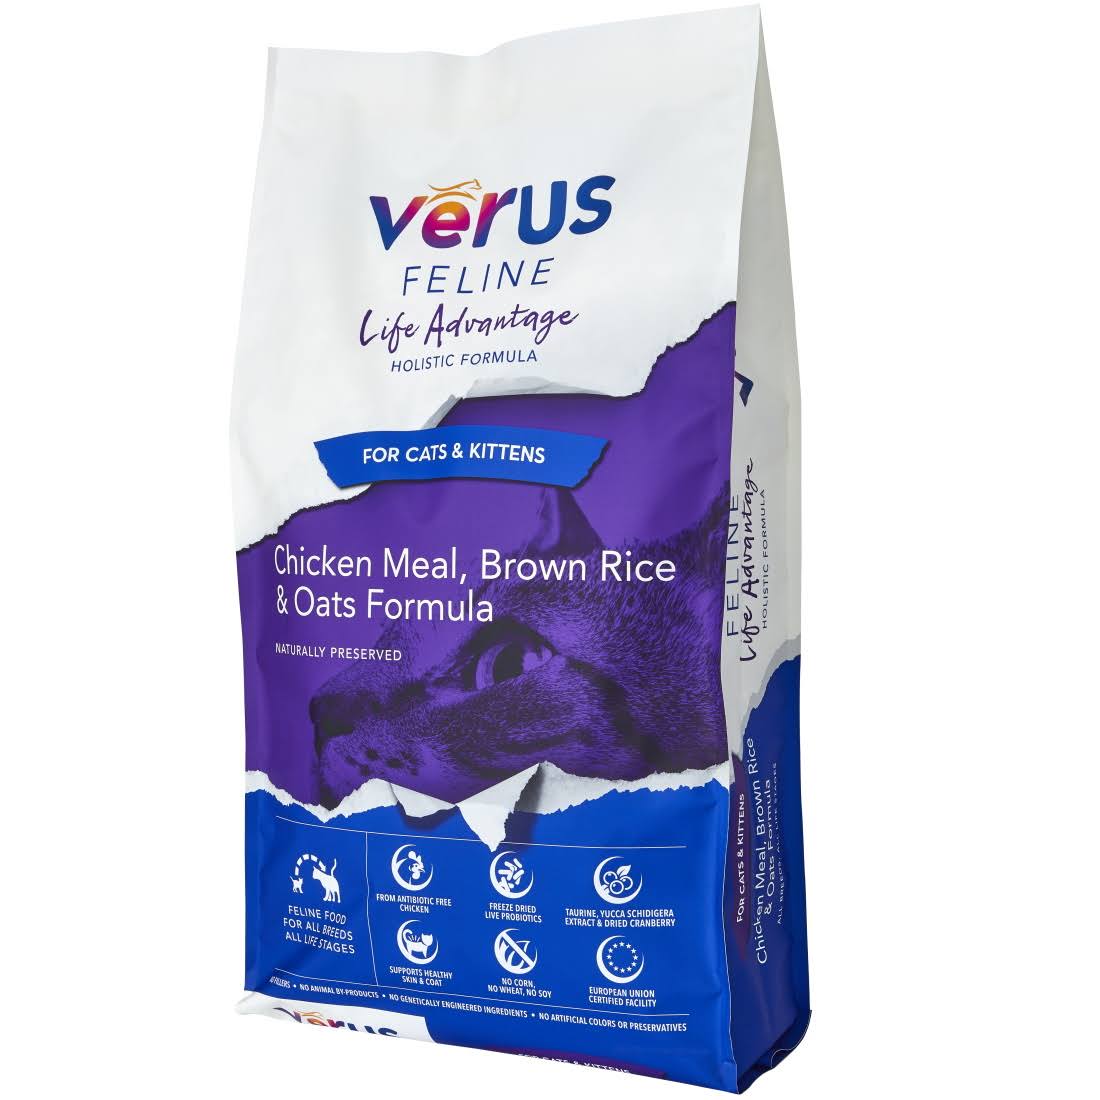 Verus Feline Life Advantage Dry Cat Food - 25 lb Bag